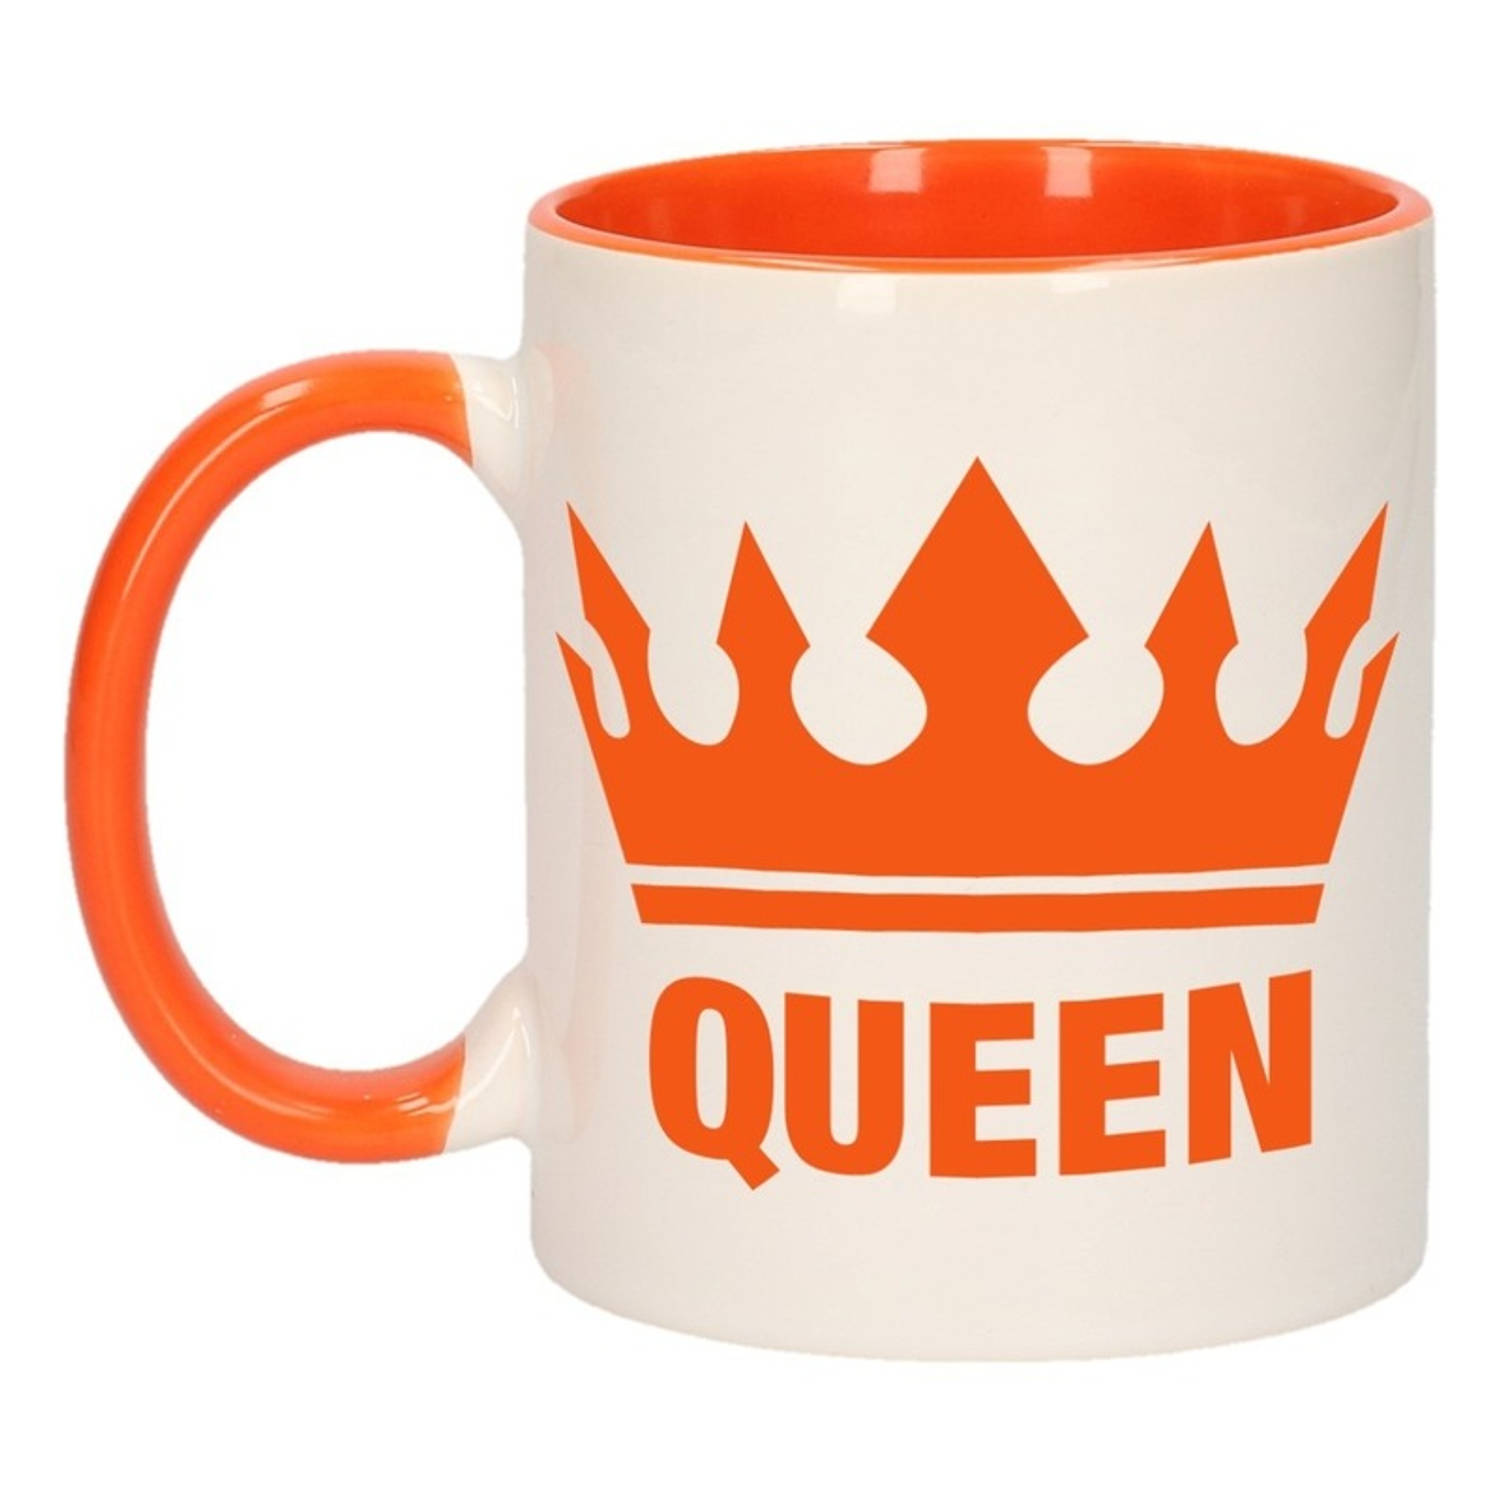 Koningsdag 1x Koningsdag Queen beker-mok oranje met wit 300 ml keramiek oranje bekers